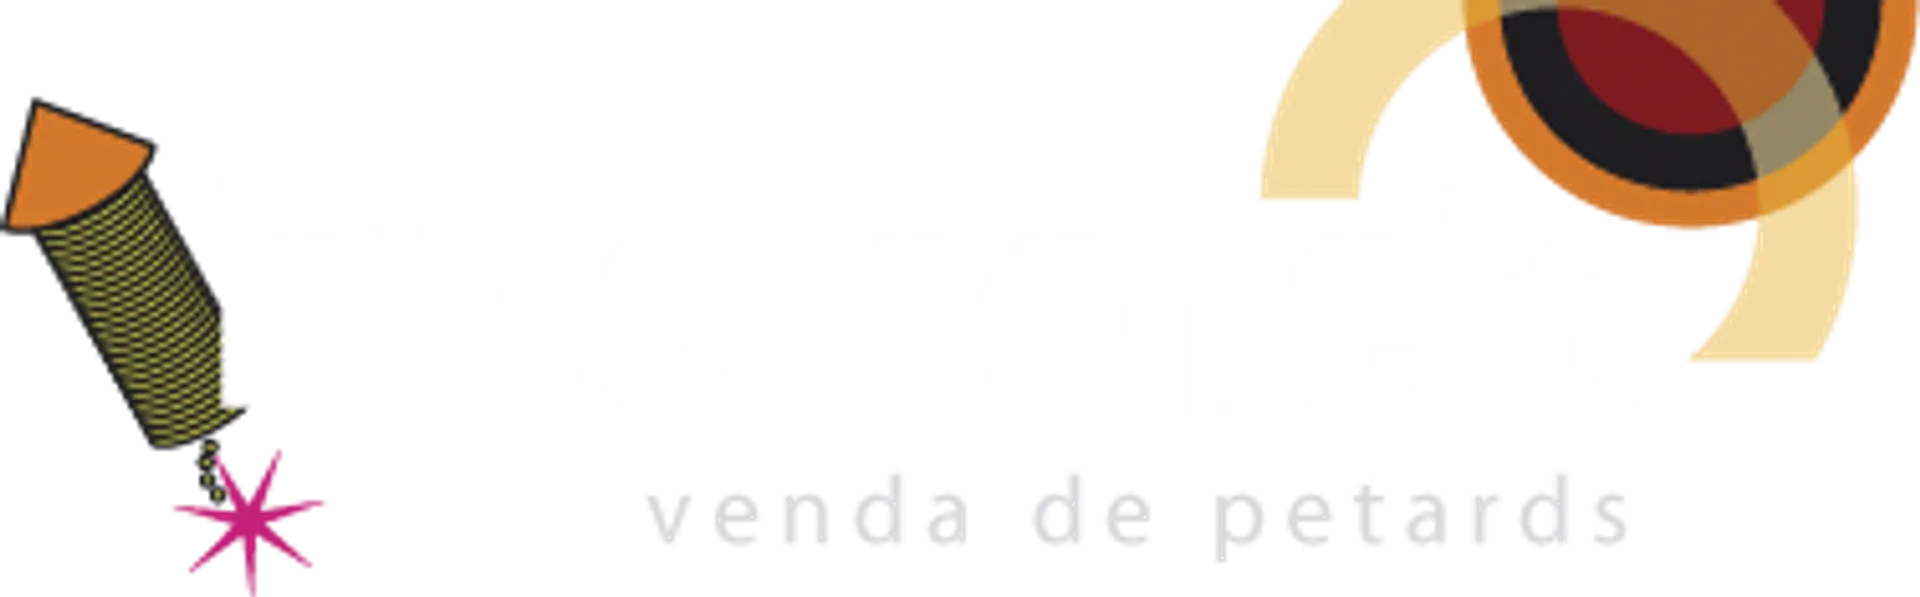 HIPERCOHETE logo